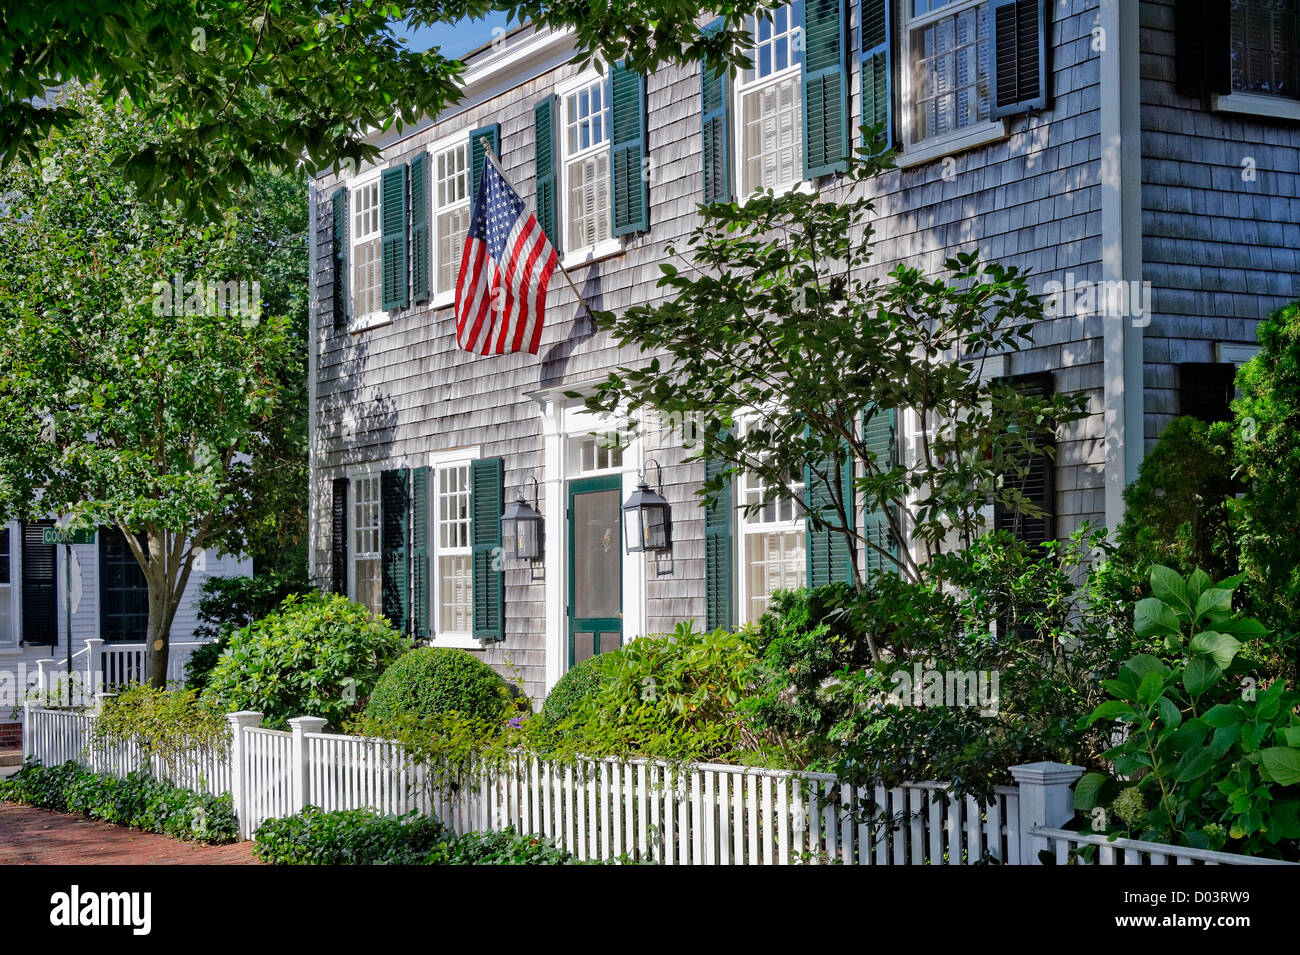 Home, Edgartown, Martha's Vineyard, Massachusetts, USA Stock Photo